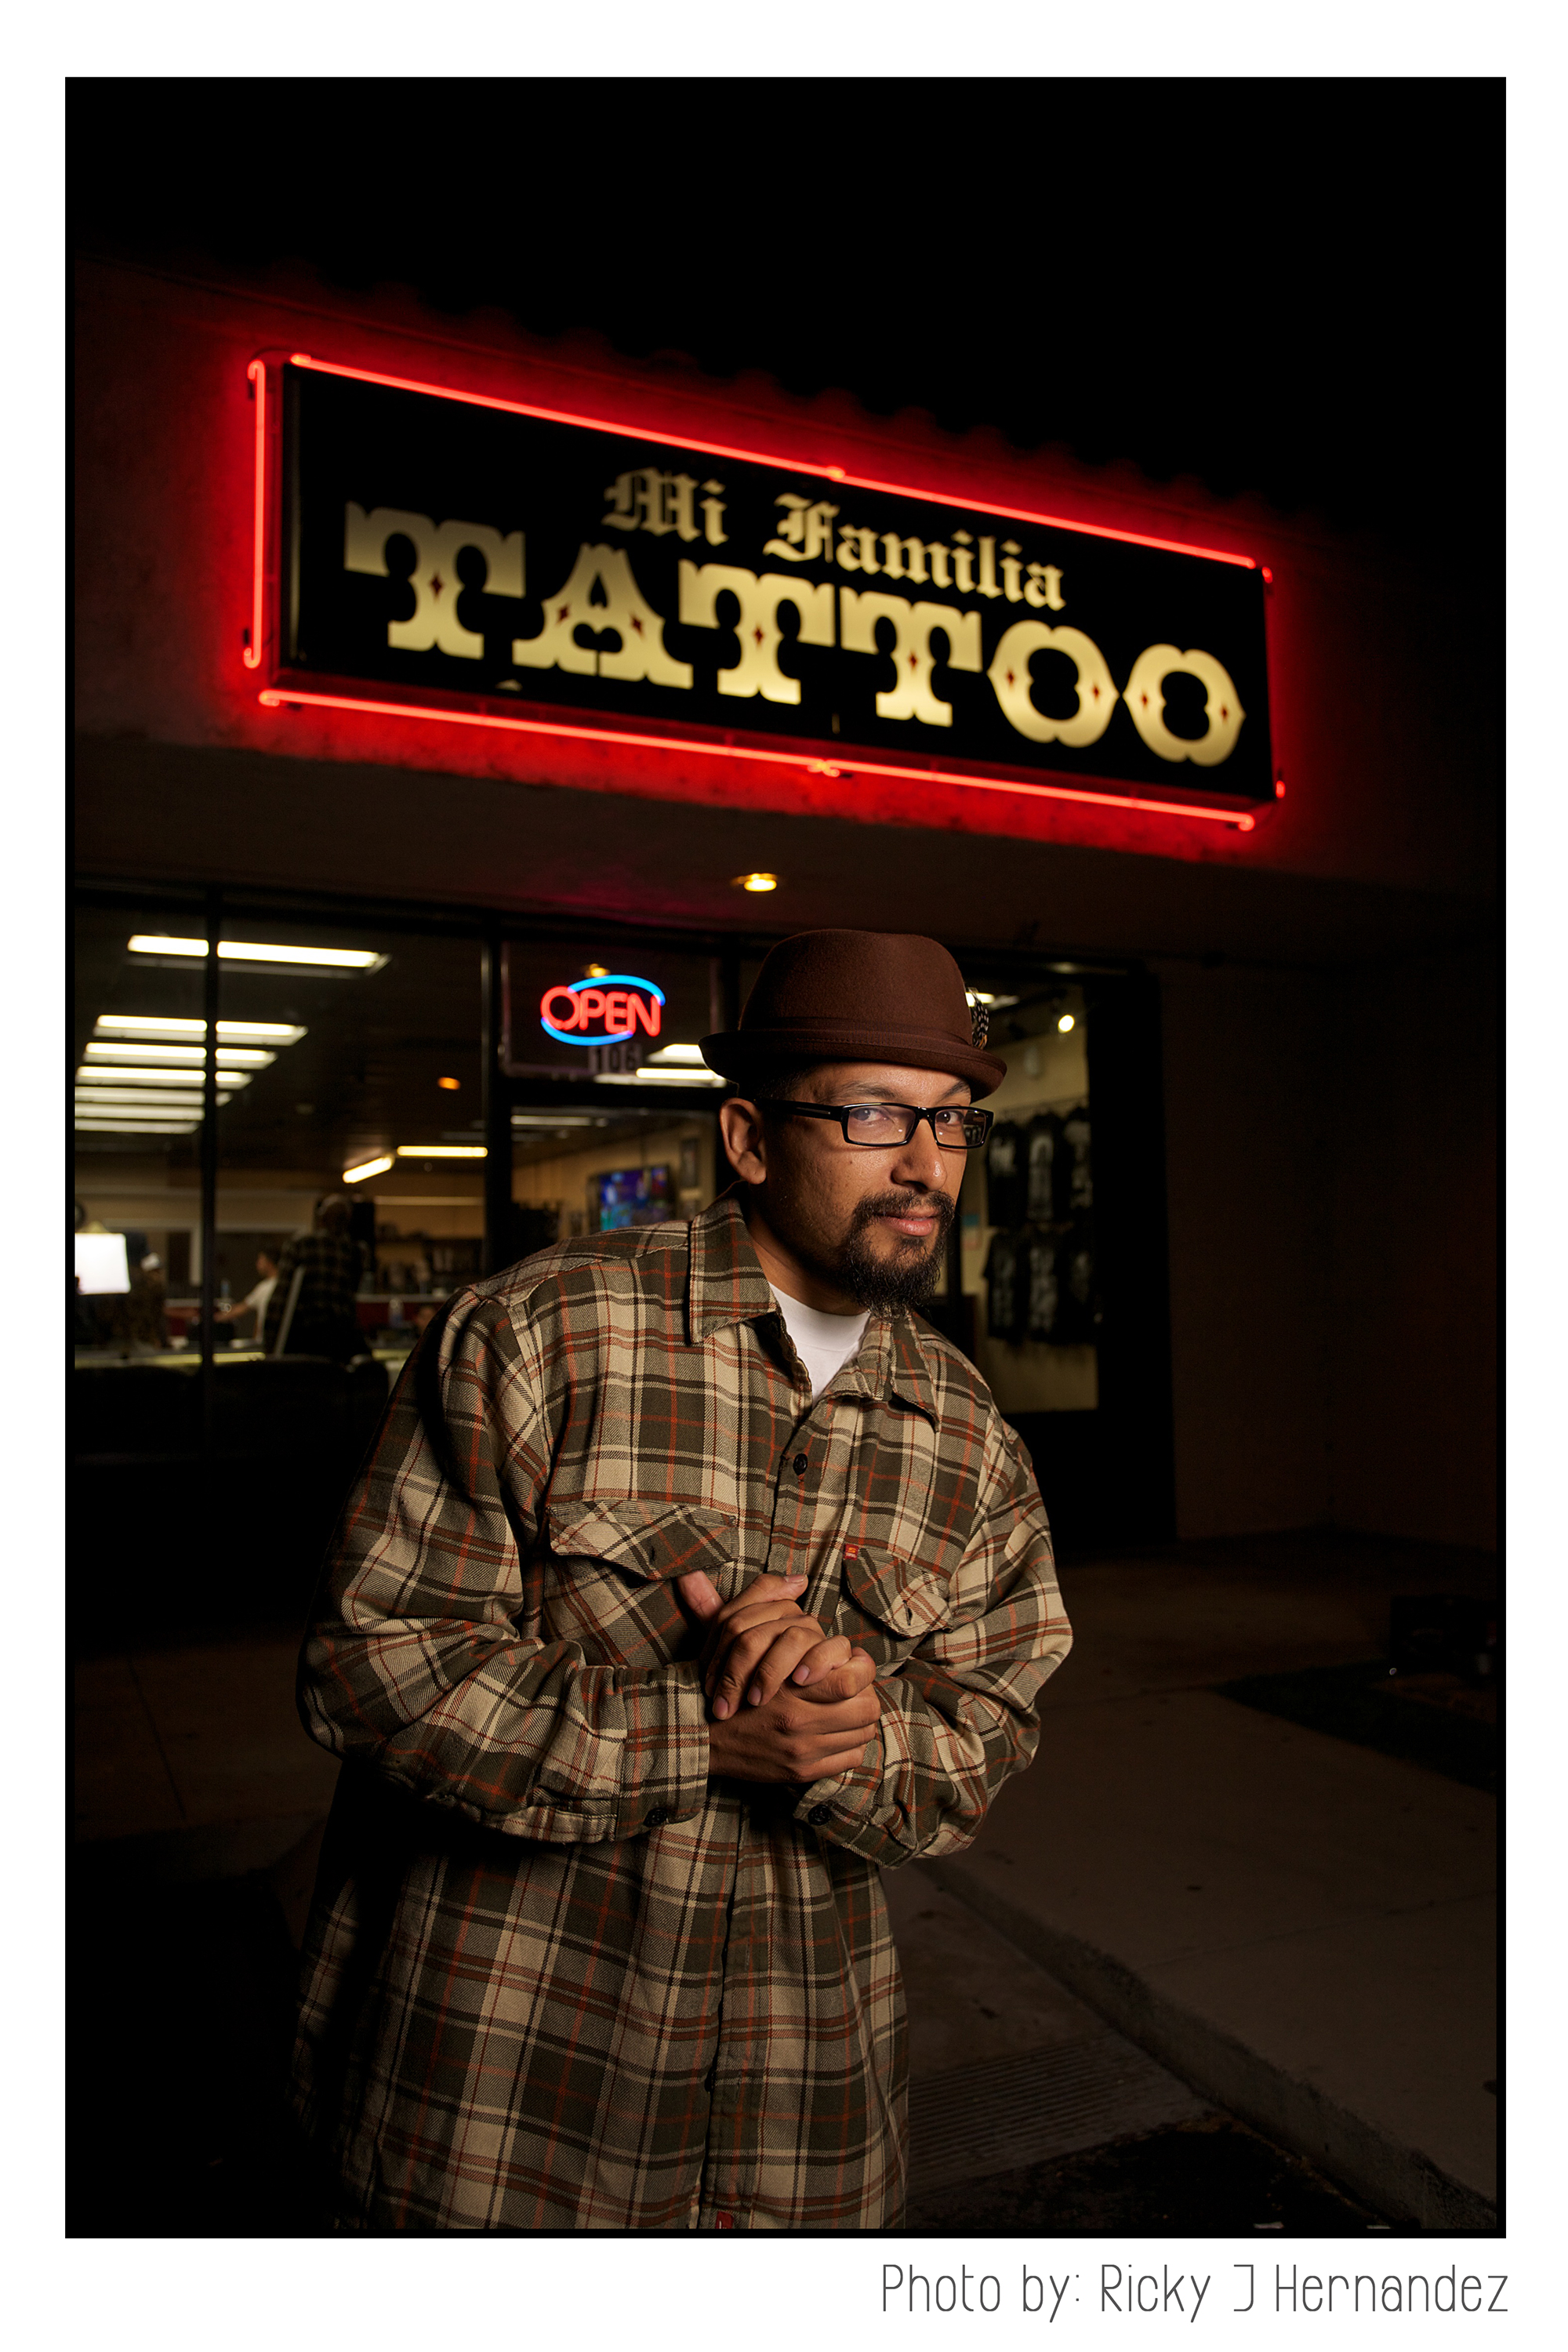 Art night at Mi Familia Tattoo Shop in Anaheim CA.